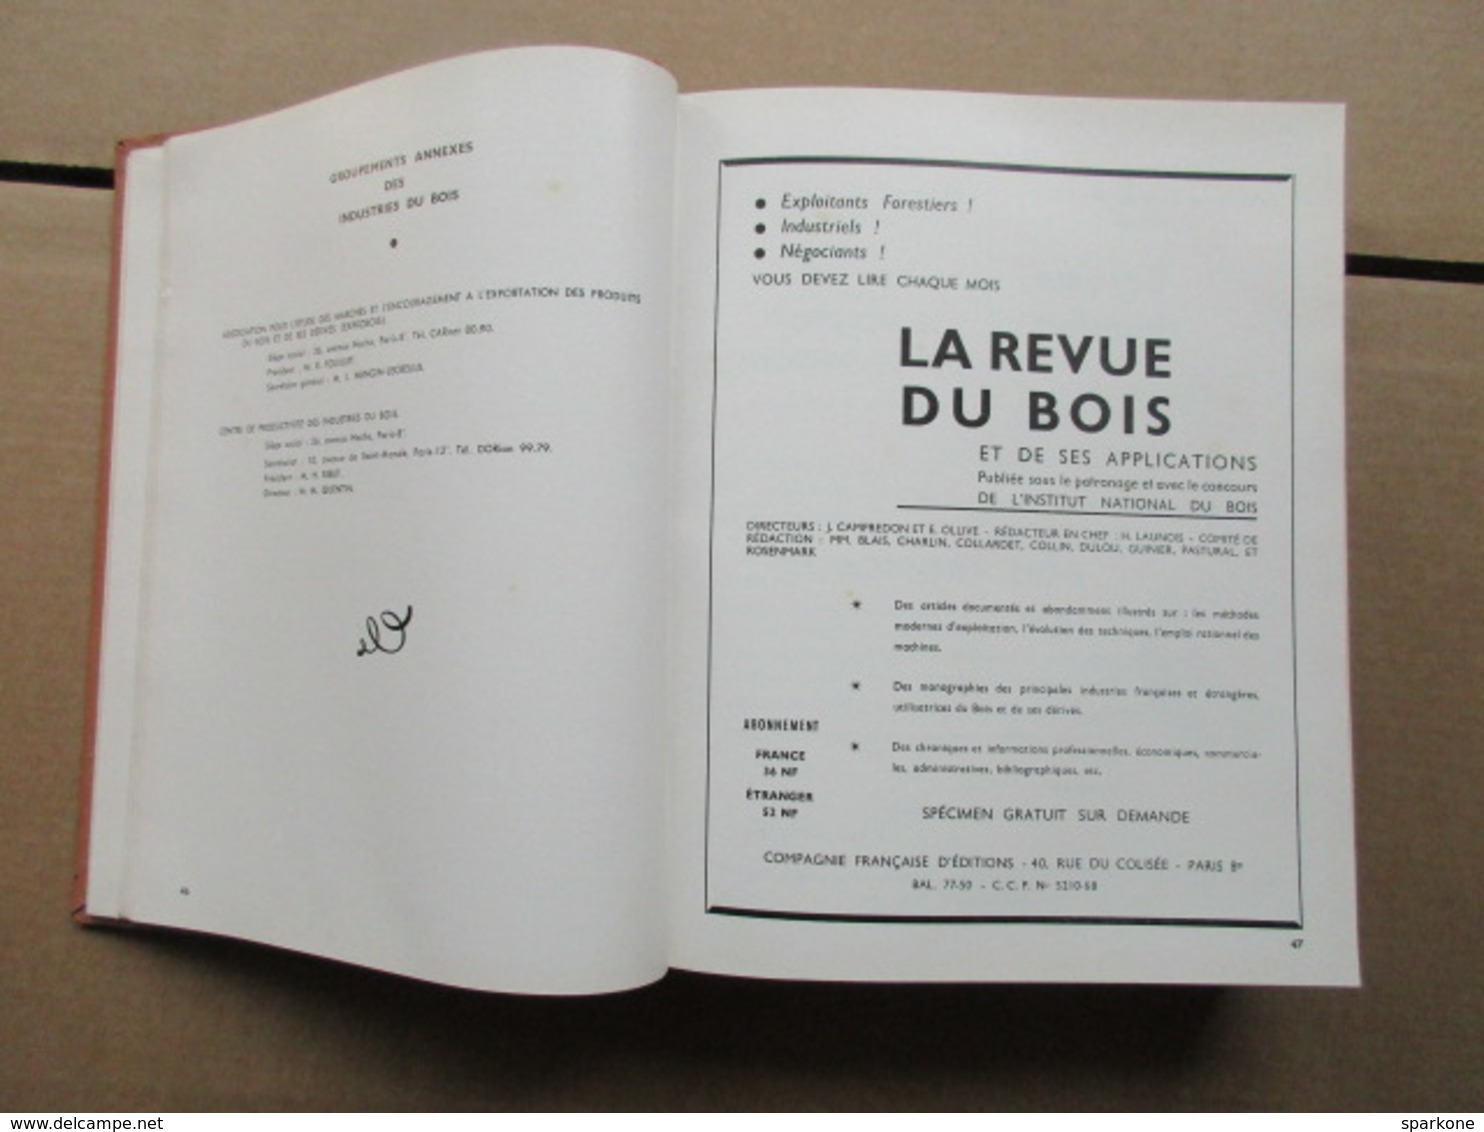 Annuaire général du Commerce et des industries du Bois / Ufap / 1961 - 1962